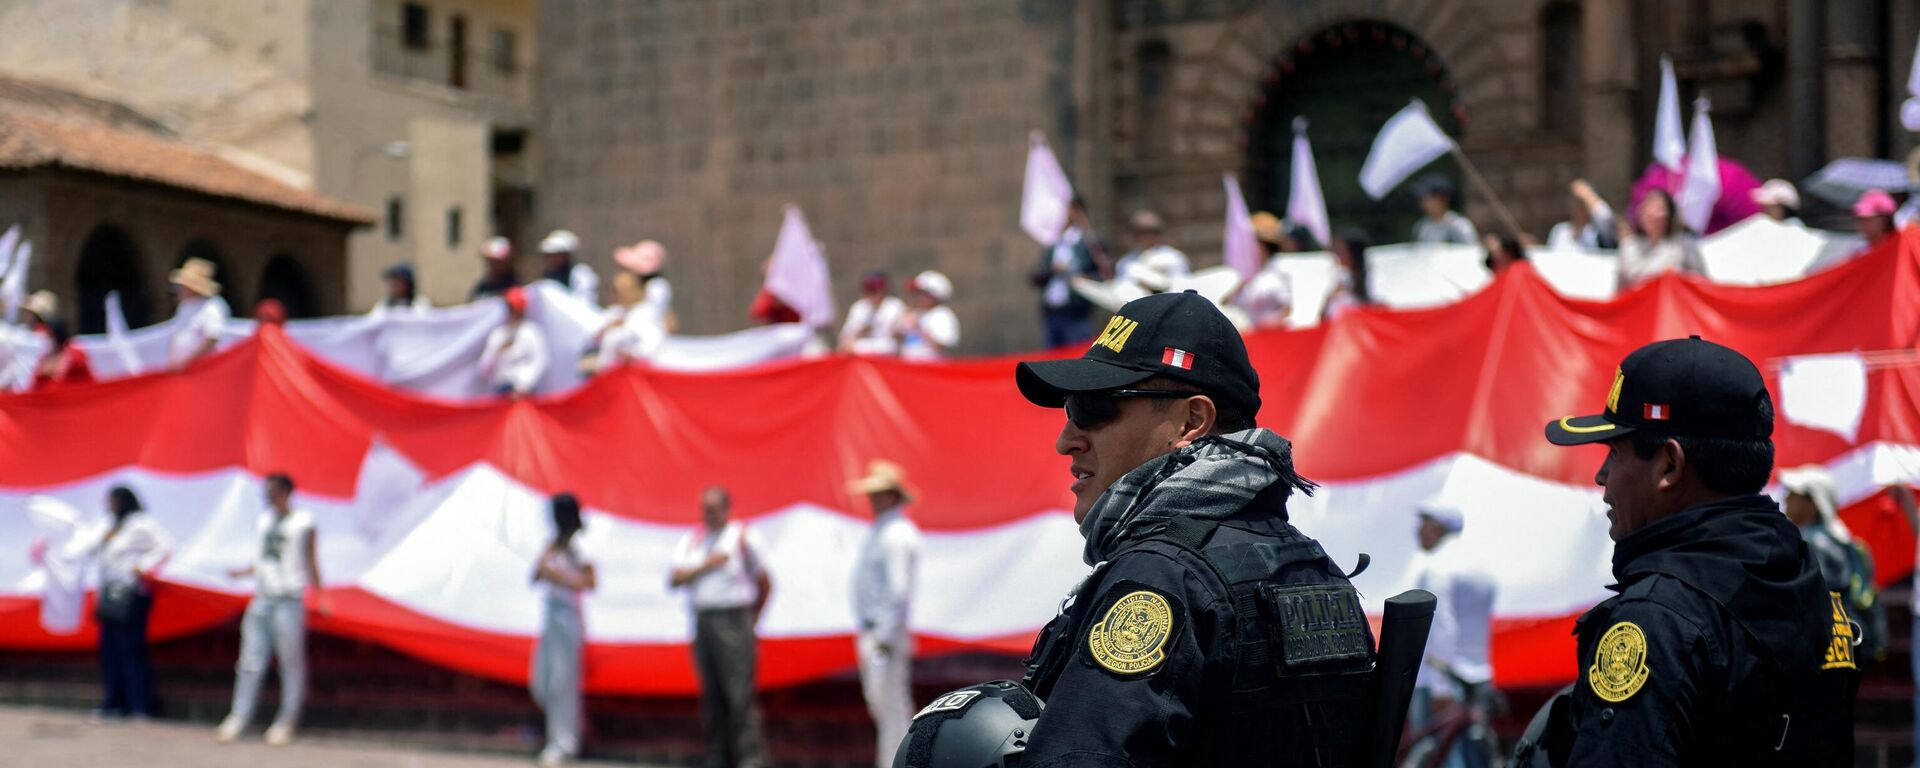 La policía antidisturbios monta guardia en la Plaza de Armas de Cusco, Perú, durante una manifestación por la paz en memoria de las 42 personas que murieron en las recientes protestas - Sputnik Mundo, 1920, 18.01.2023